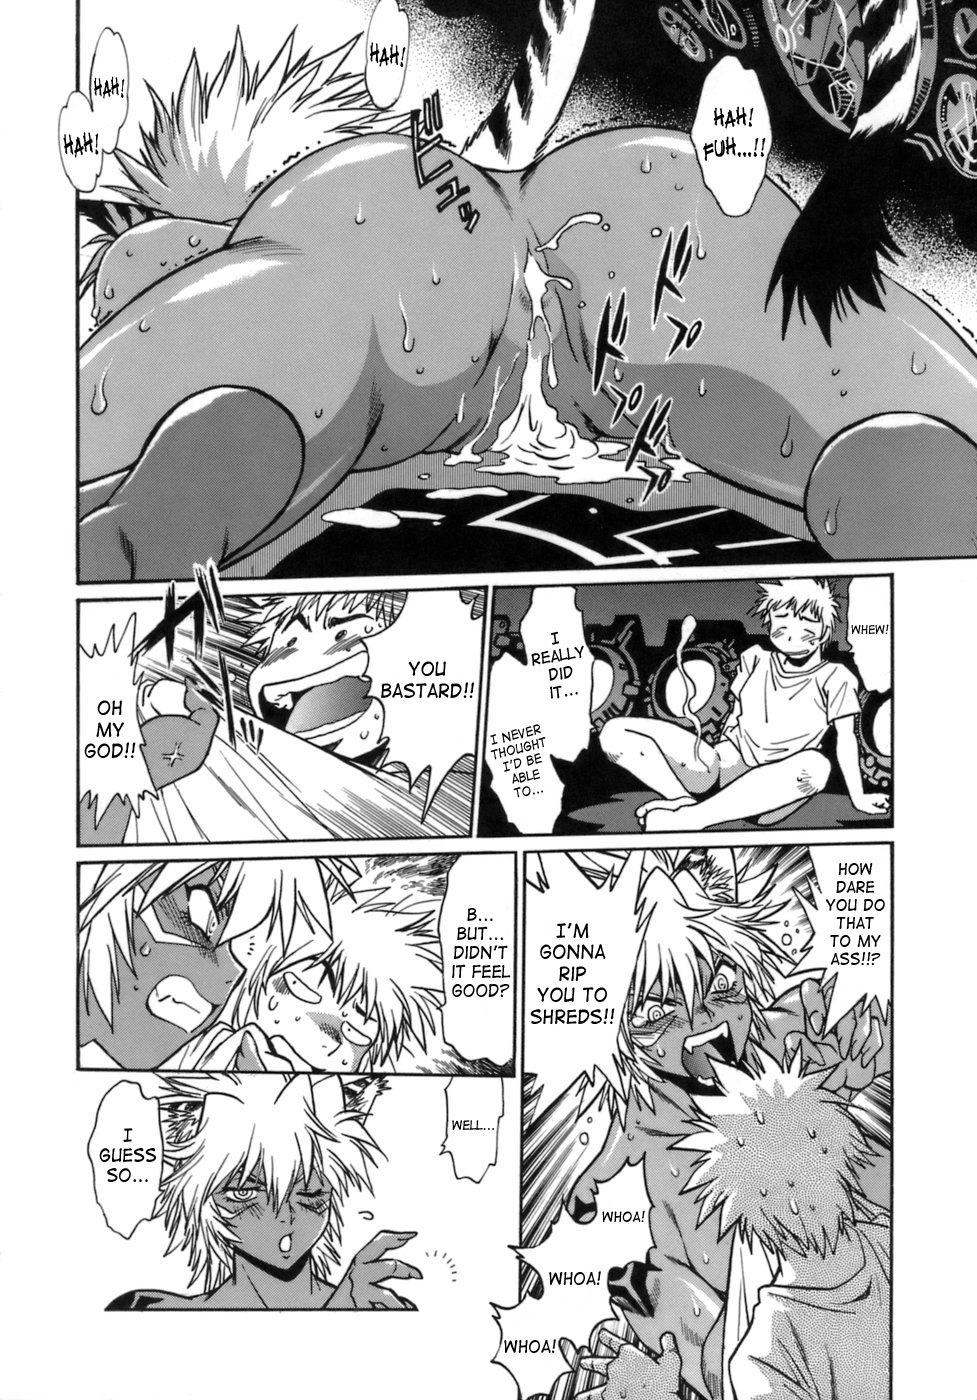 Tail Chaser Vol.1 151 hentai manga